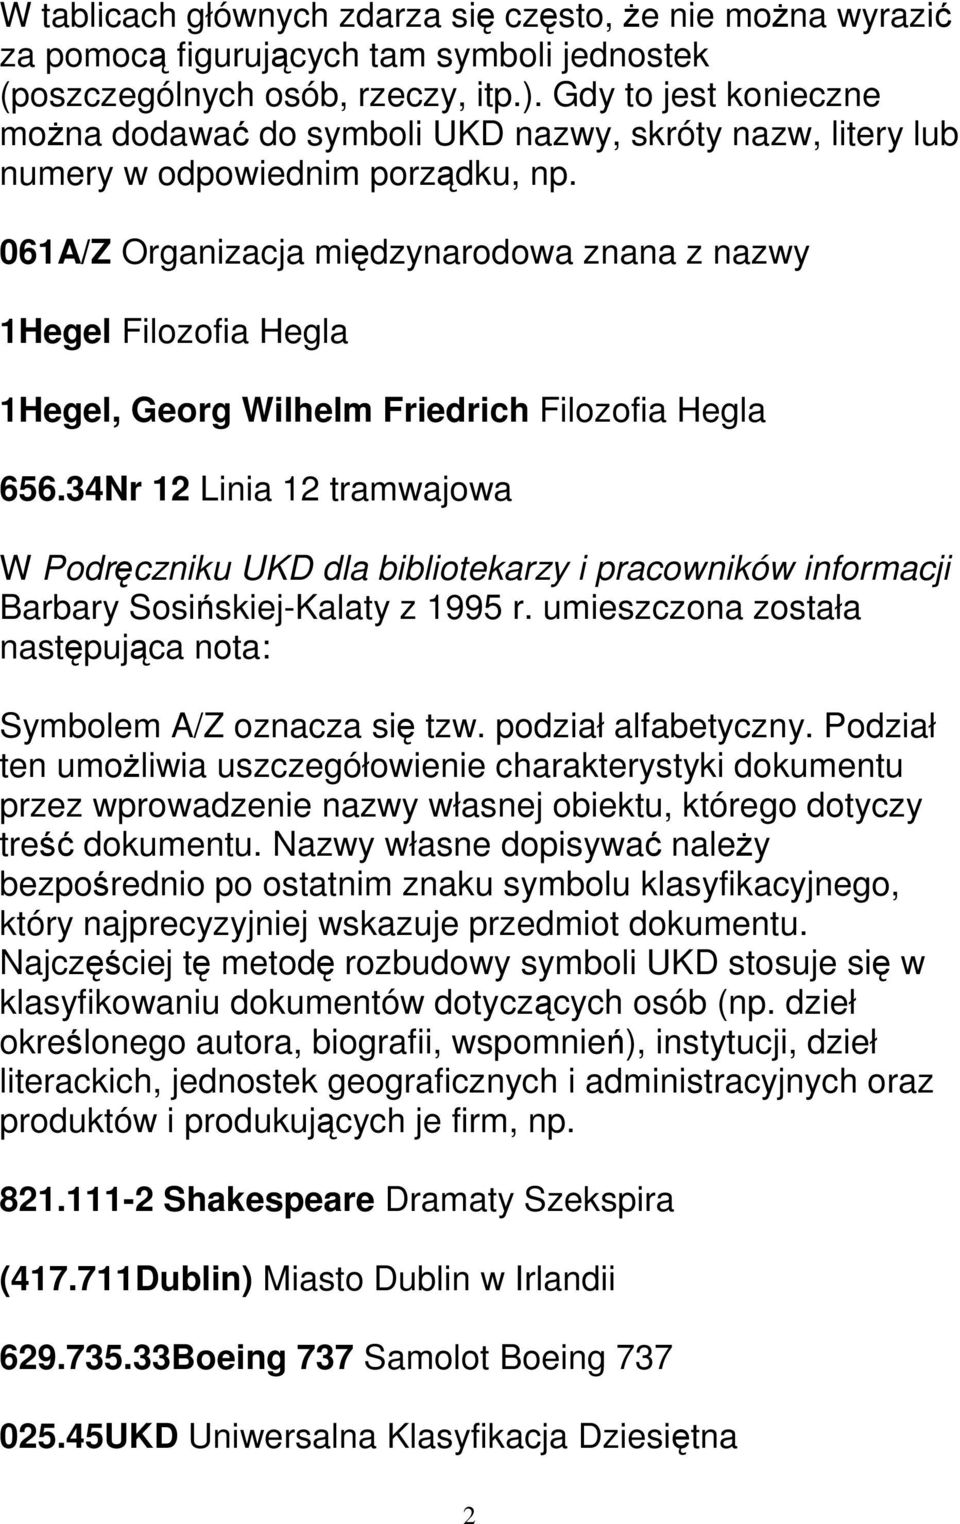 061A/Z Organizacja międzynarodowa znana z nazwy 1Hegel Filozofia Hegla 1Hegel, Georg Wilhelm Friedrich Filozofia Hegla 656.